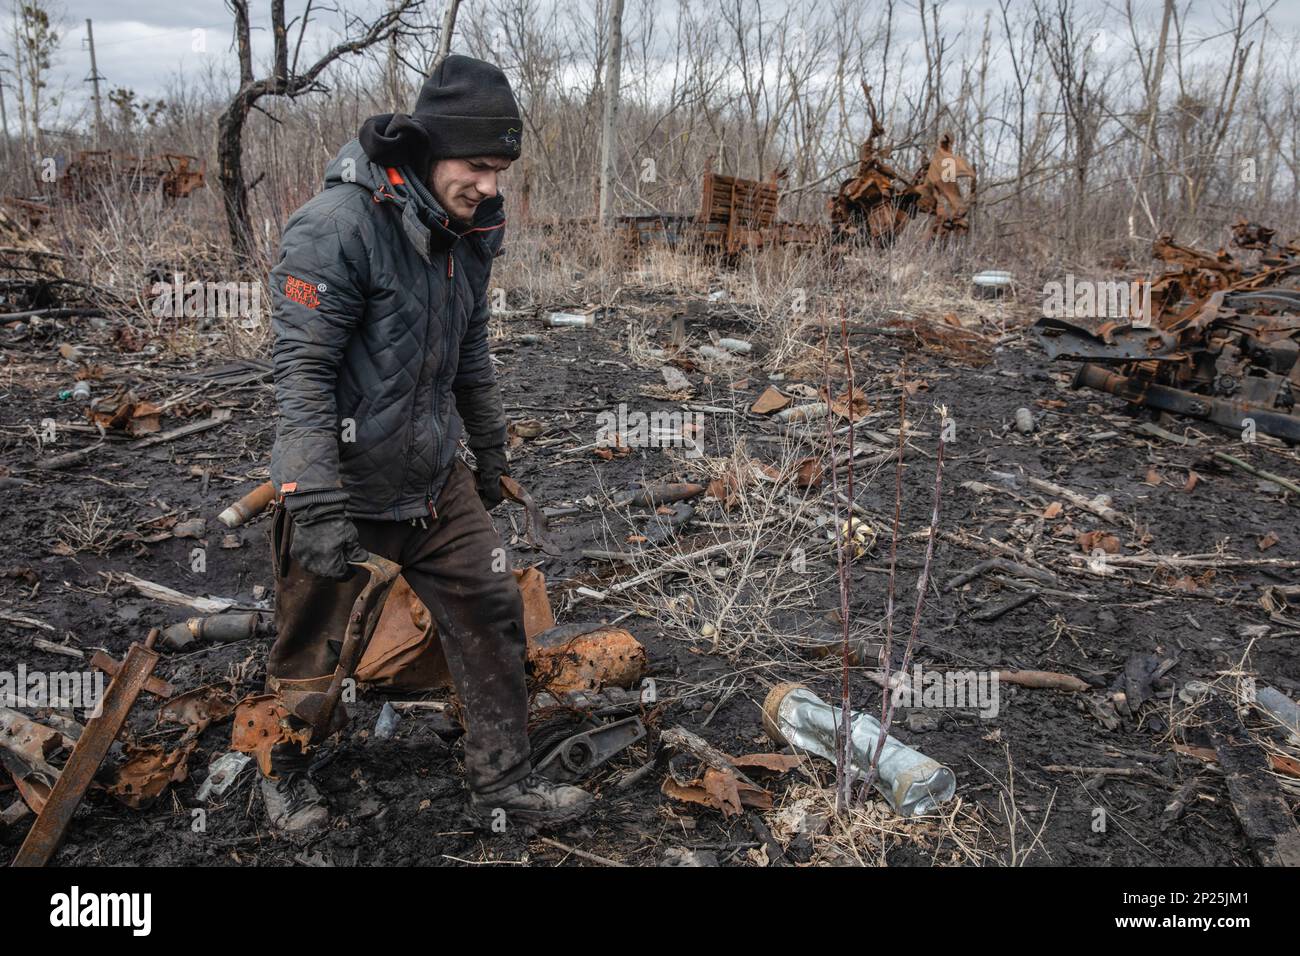 Gli uomini locali smantellano i resti di attrezzature militari russe distrutte e bruciate per rottami metallici, regione di Kharkiv, Ucraina. Guidando lungo le strade della regione di Kharkiv, più vicino si arriva a Donbas, le attrezzature militari più bruciate e rotte che si vede sul lato della strada, nei campi e nelle cinghie forestali. In uno di questi nastri forestali abbiamo visto una grande quantità di apparecchiature russe bruciate. Quando abbiamo smesso di scattare foto, abbiamo visto diversi uomini e adolescenti che si rimesero sistematicamente. Stavano smontandolo per i rottami di metallo, per i quali ricevono 2 crivnie per chilogrammo. Non possono raccogliere più t Foto Stock